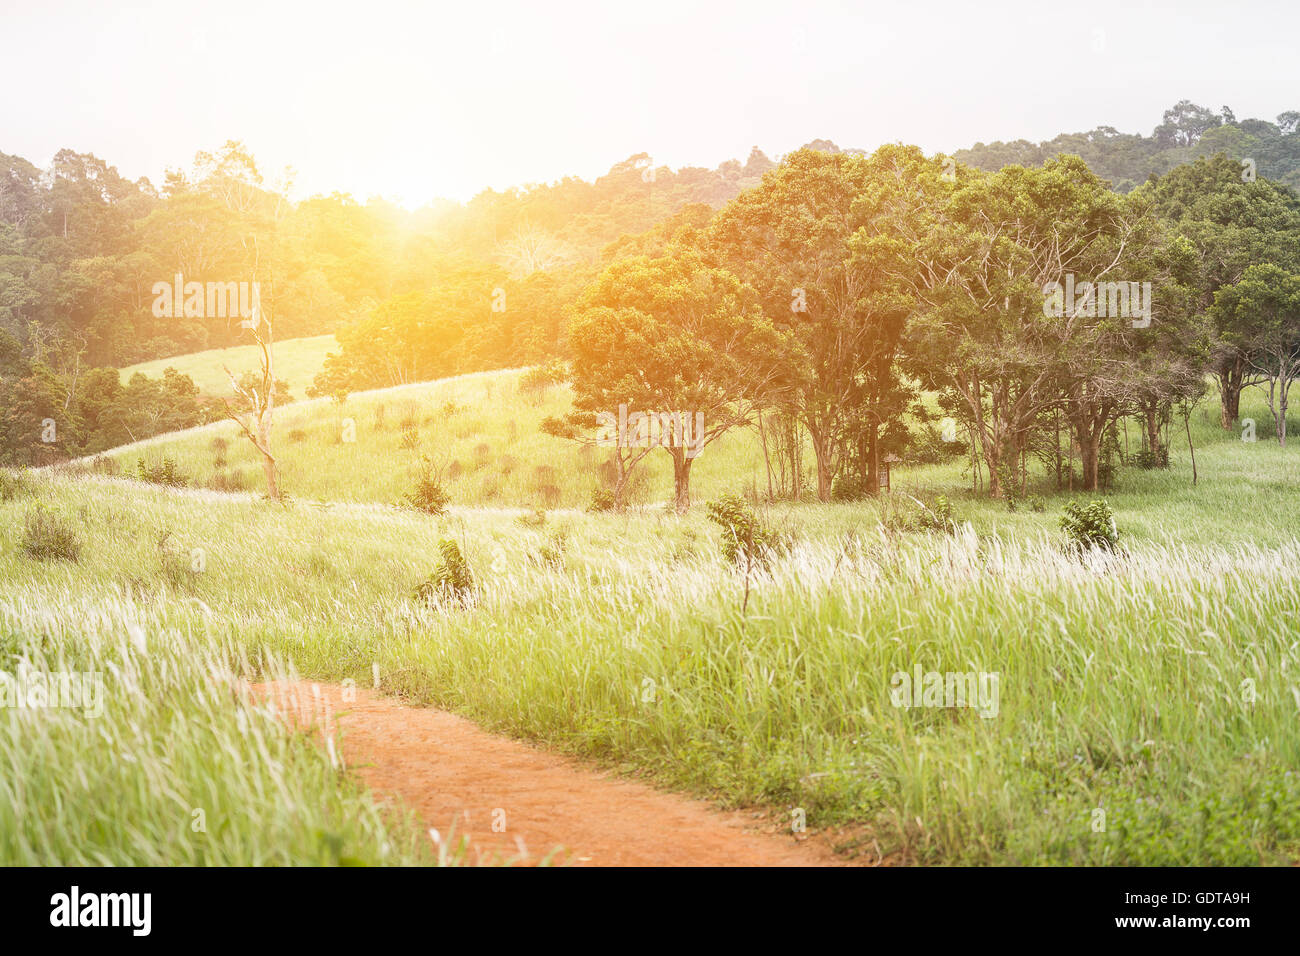 Grüne Hügel mit blühenden Wiesen und Baum im Nationalpark von Thailand. Hintergrund ist warmes gelbes Licht vom Sonnenaufgang. Stockfoto